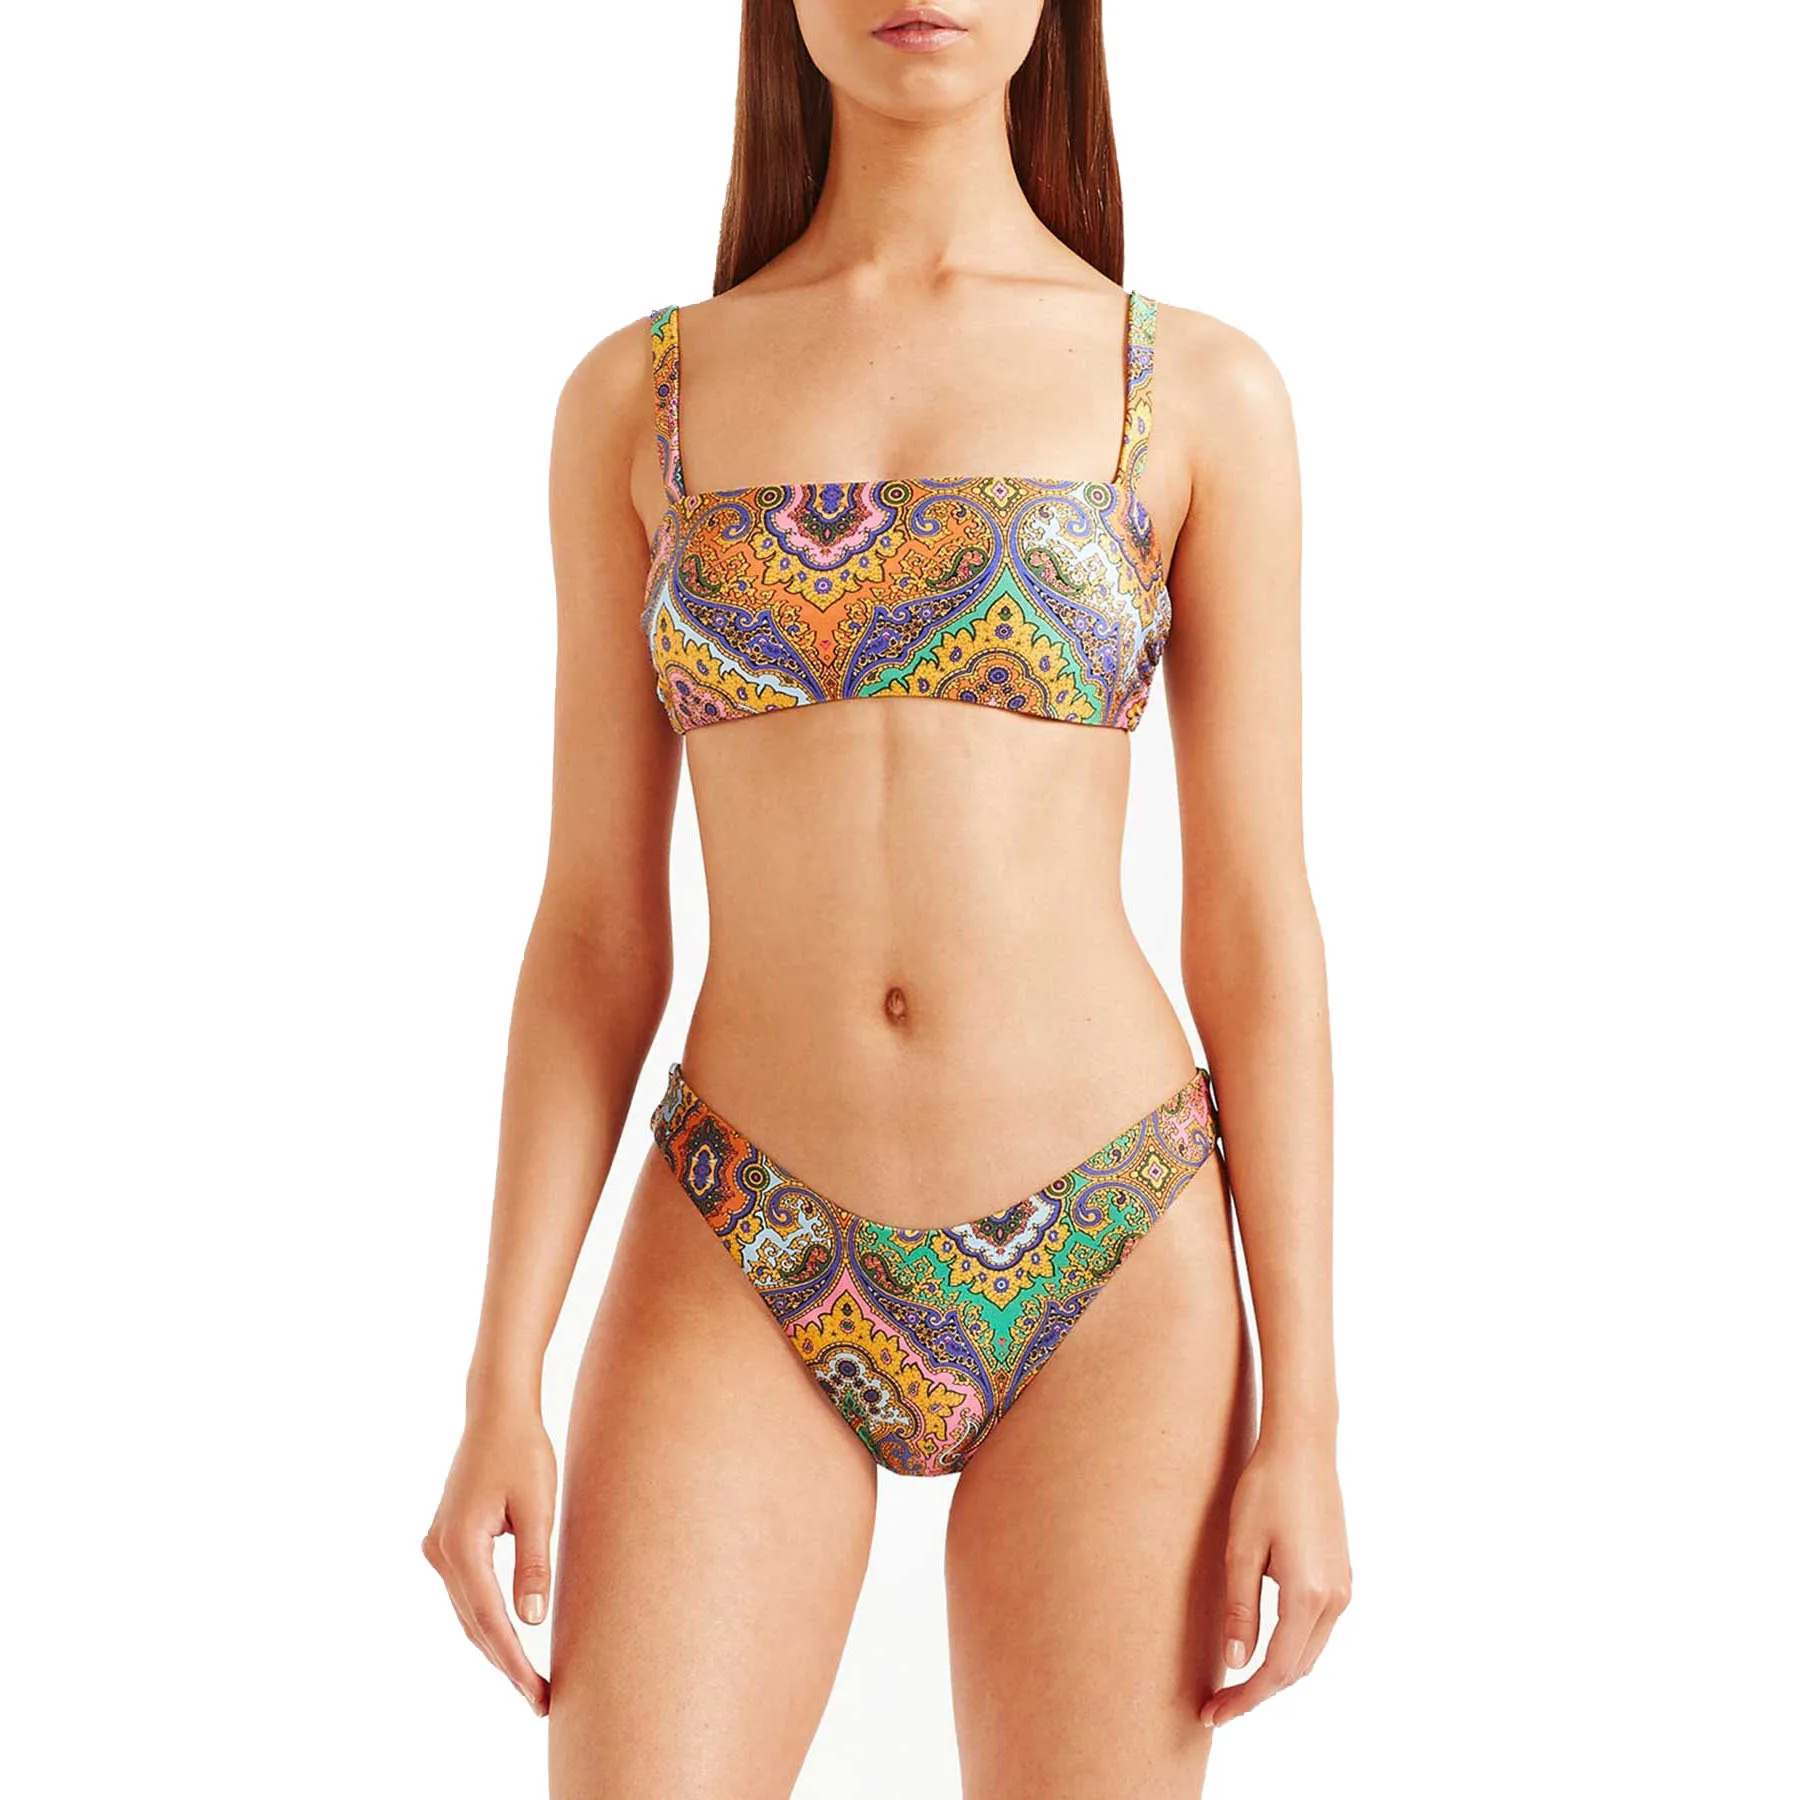 Printed Bikini Sets Low Waist Women Suspenders Wrap Chest Swimwear Vintage Swimsuit Bathing Suit Brazilian Beachwear Two Pieces